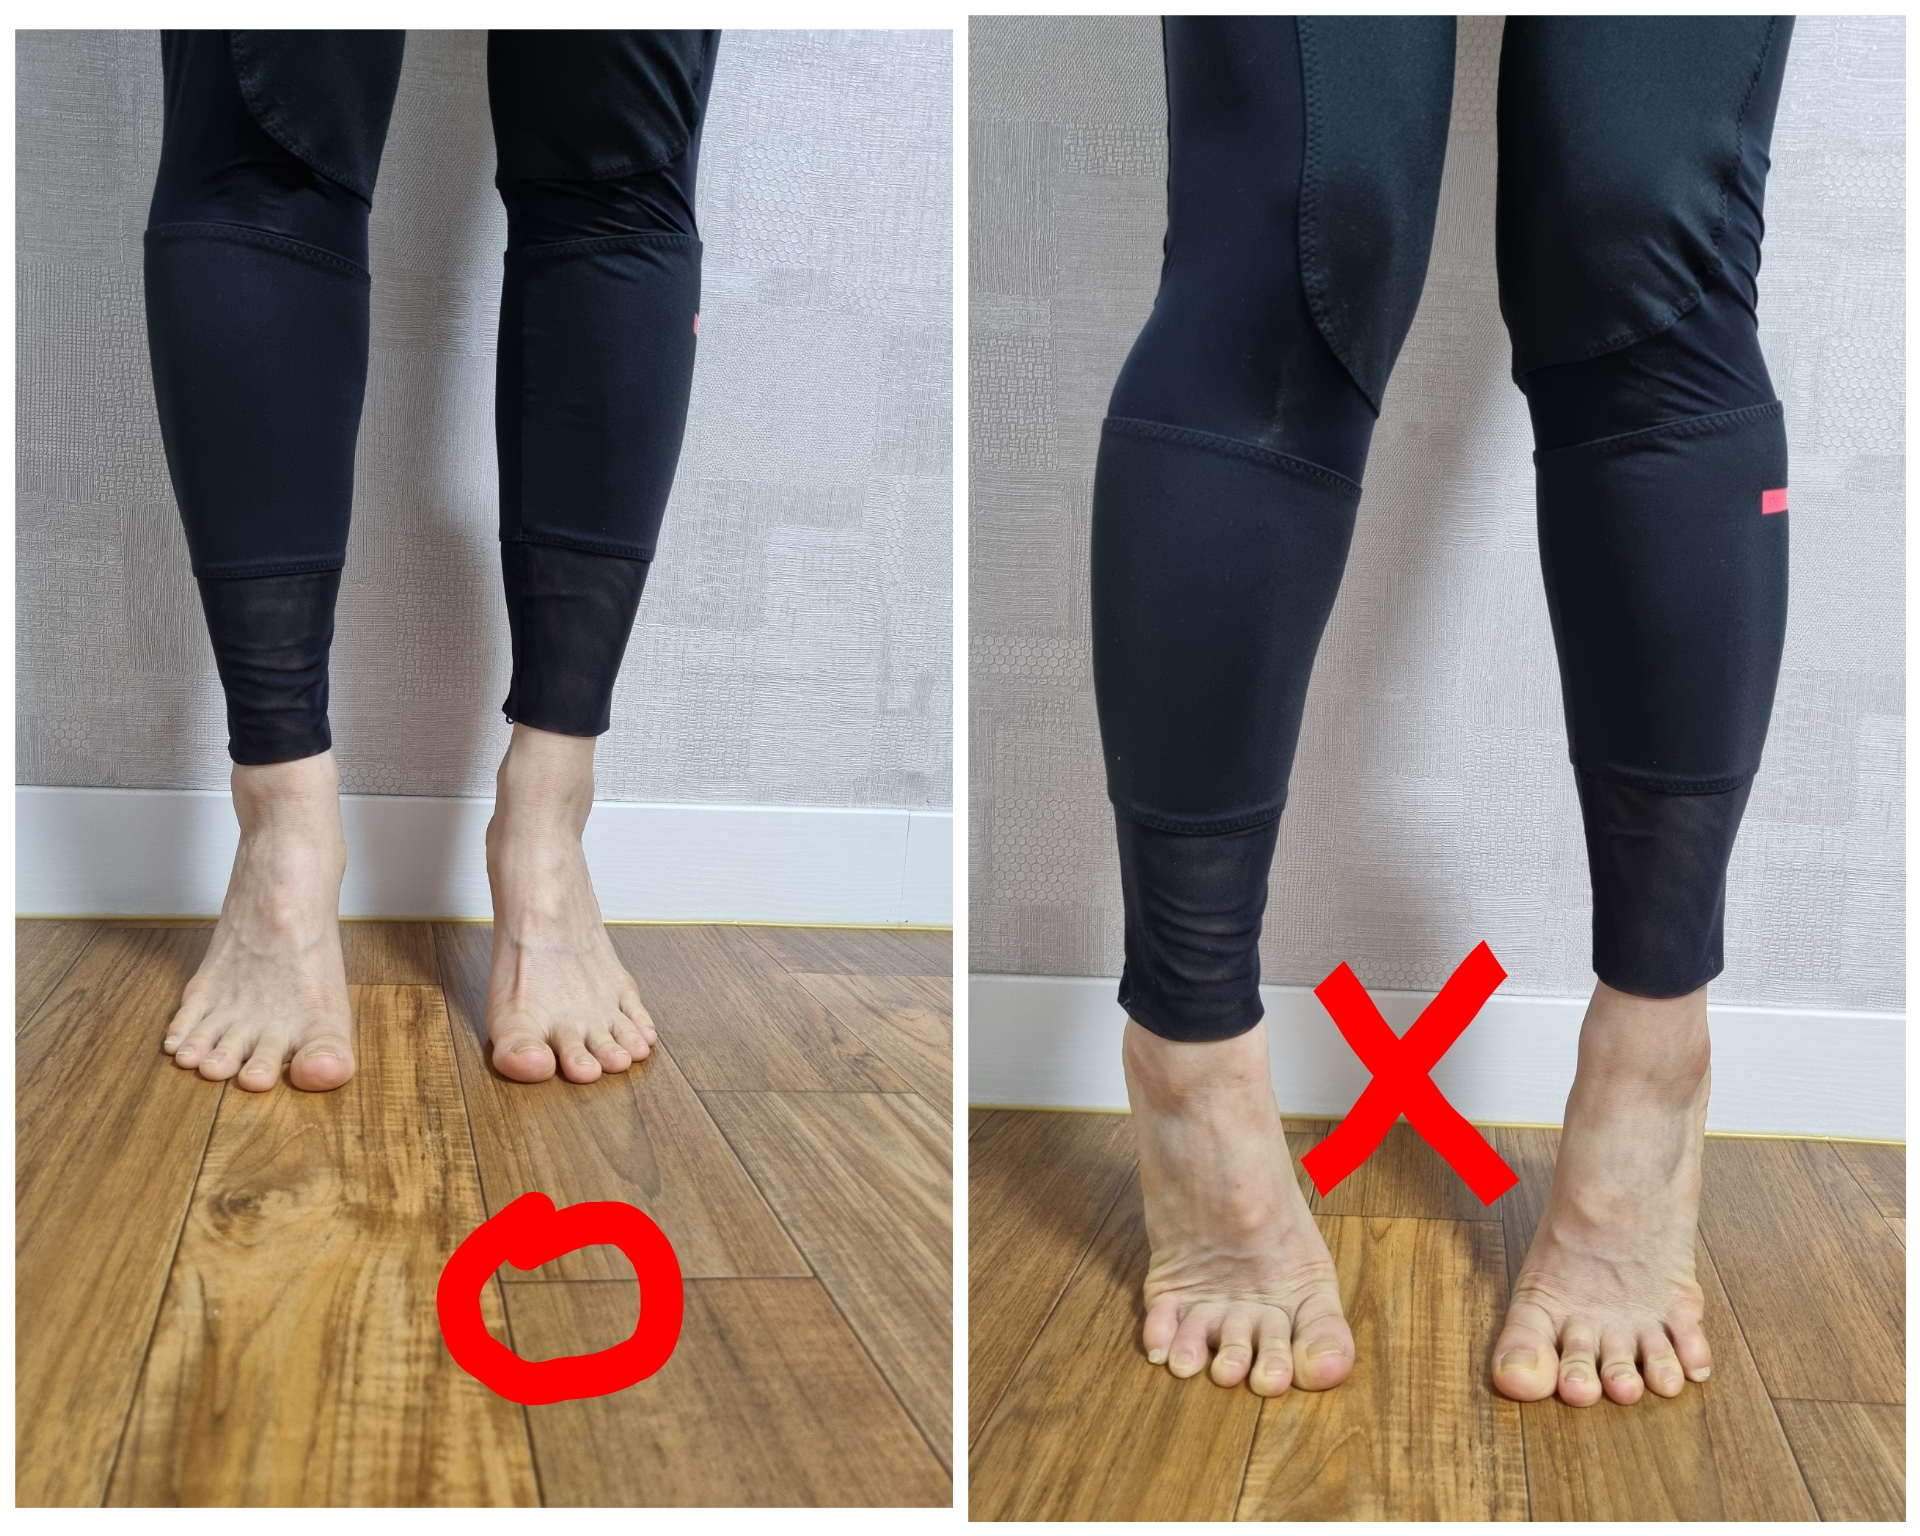 족저근막염 환자에게 필요한 운동- 발뒤꿈치 들어올리기. 이때 중요한 점은 발목이 꺾이지 않도록 한다